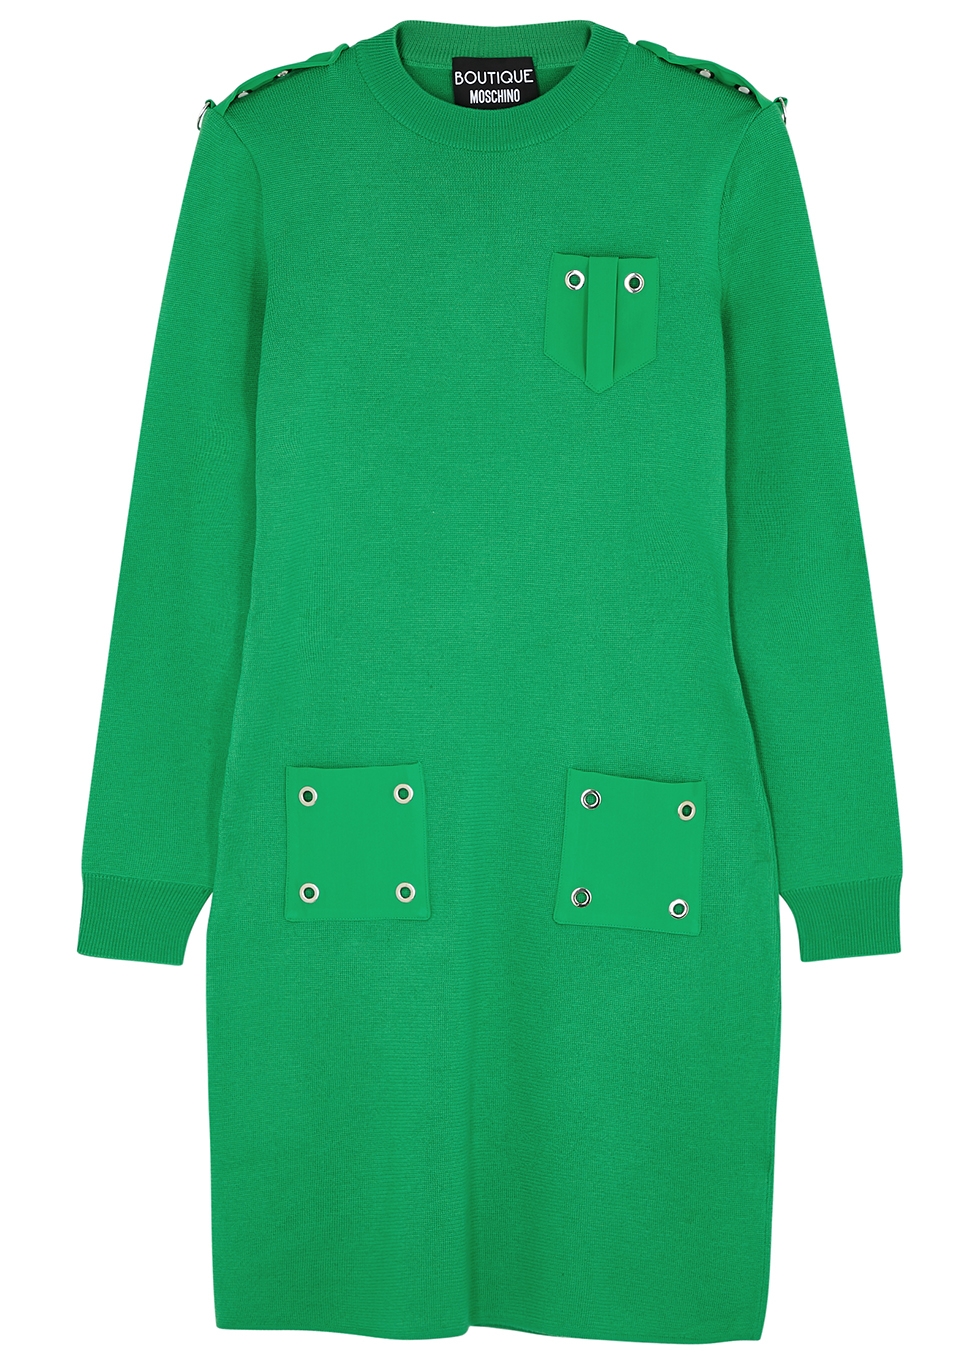 Green eyelet-embellished wool jumper dress